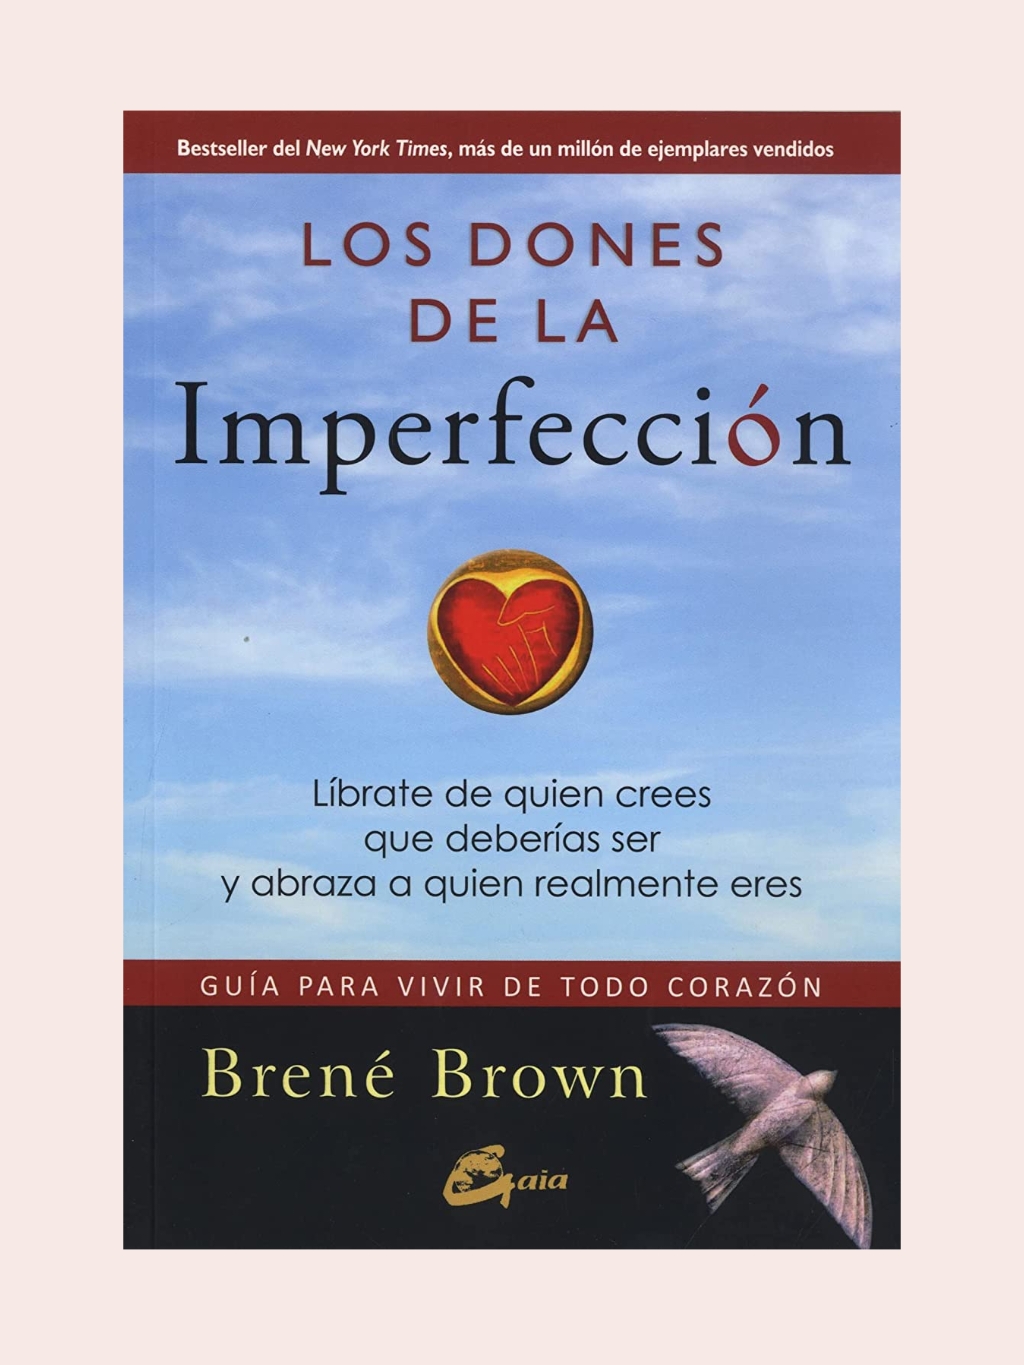 Los dones de la imperfección - Brene Brown